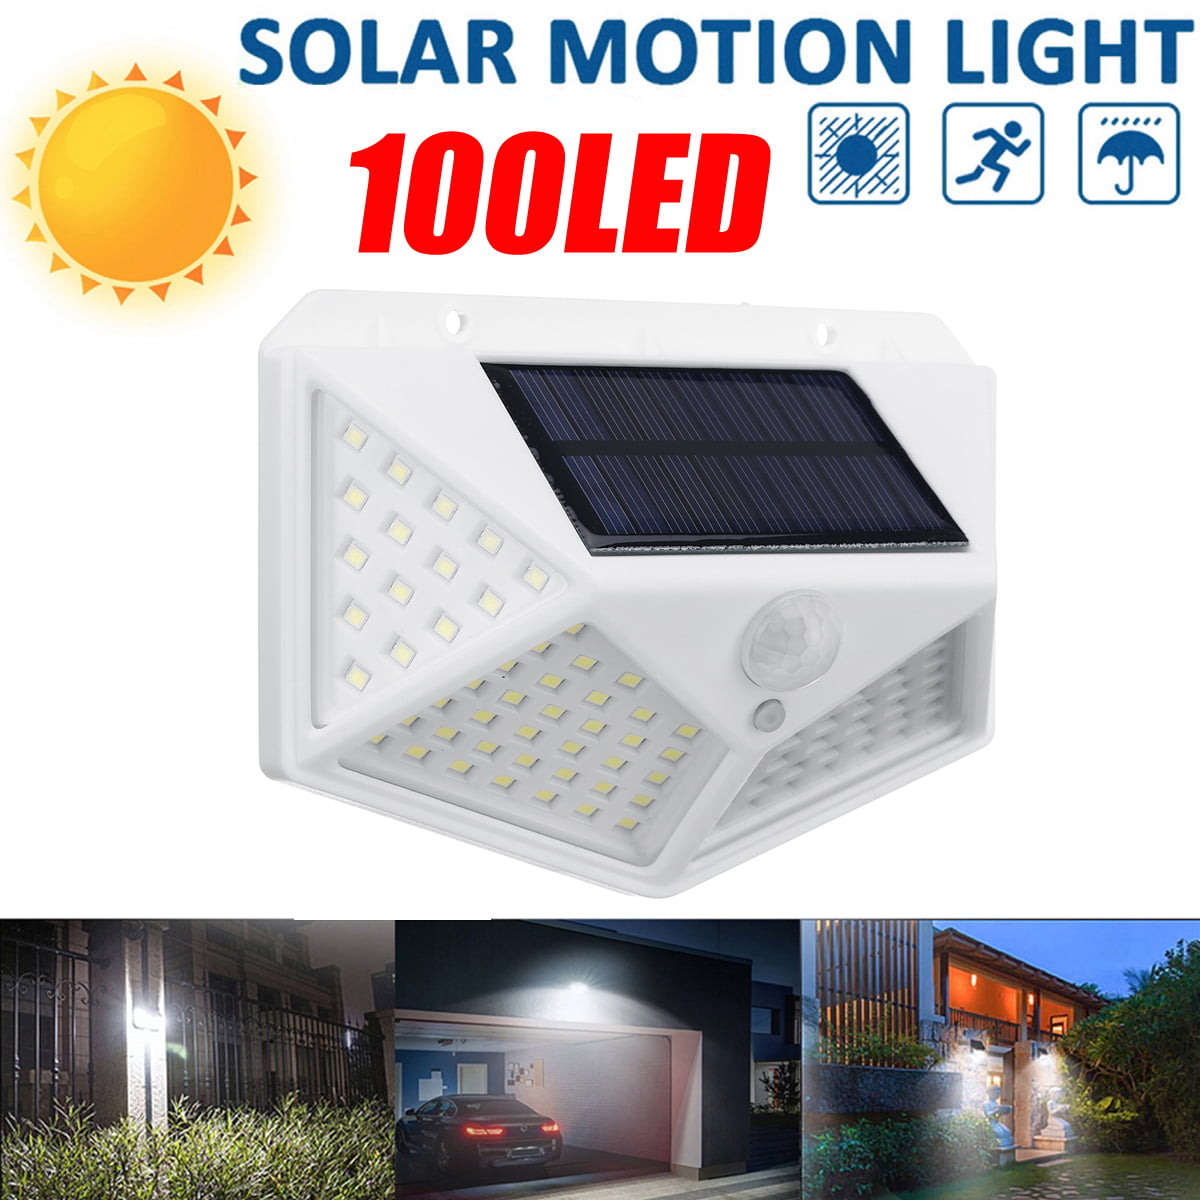 Details about   Lot LED Waterproof Solar Power PIR Motion Sensor Wall Light Outdoor Garden Lamp 